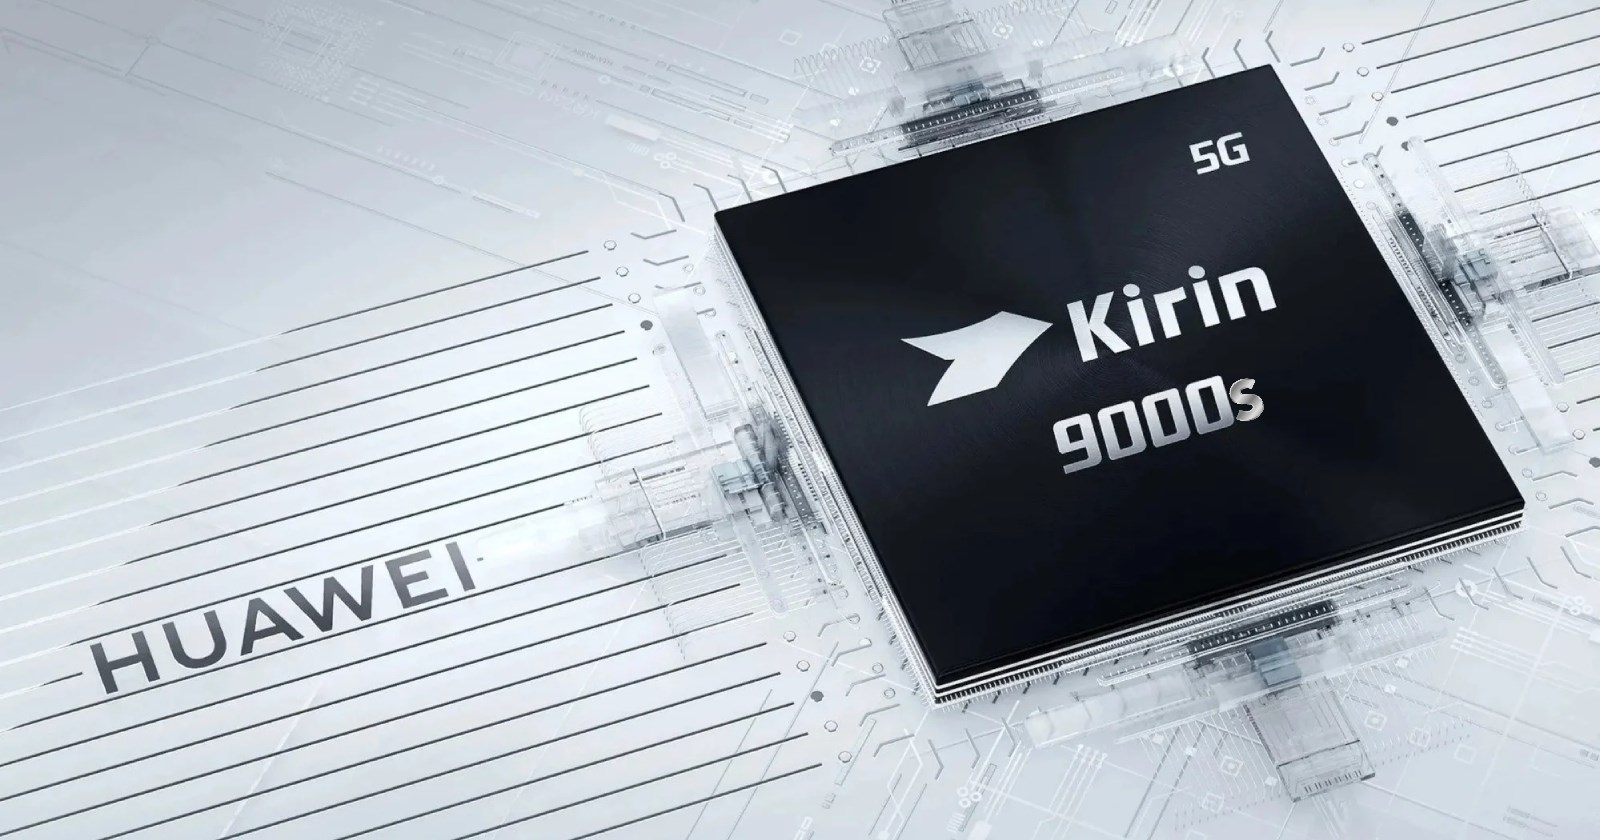 Huawei'nin Kirin 9000S çipseti, Kirin 9000'in gerisinde kalıyor